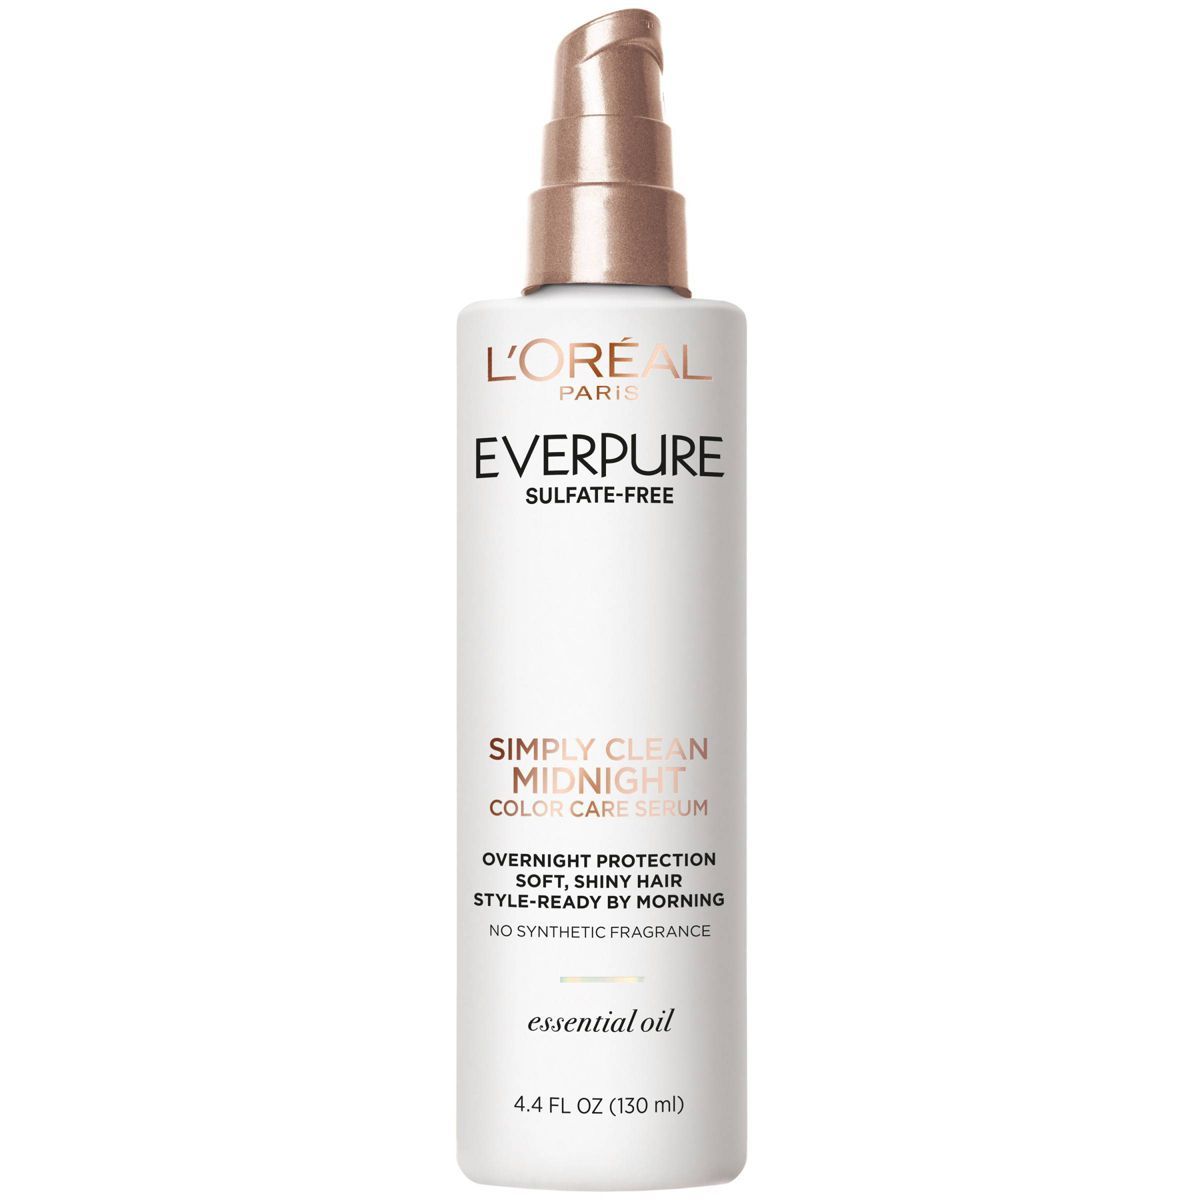 L'Oreal Paris EverPure Simply Clean Midnight Serum Hair Treatment - 4.4 fl oz | Target